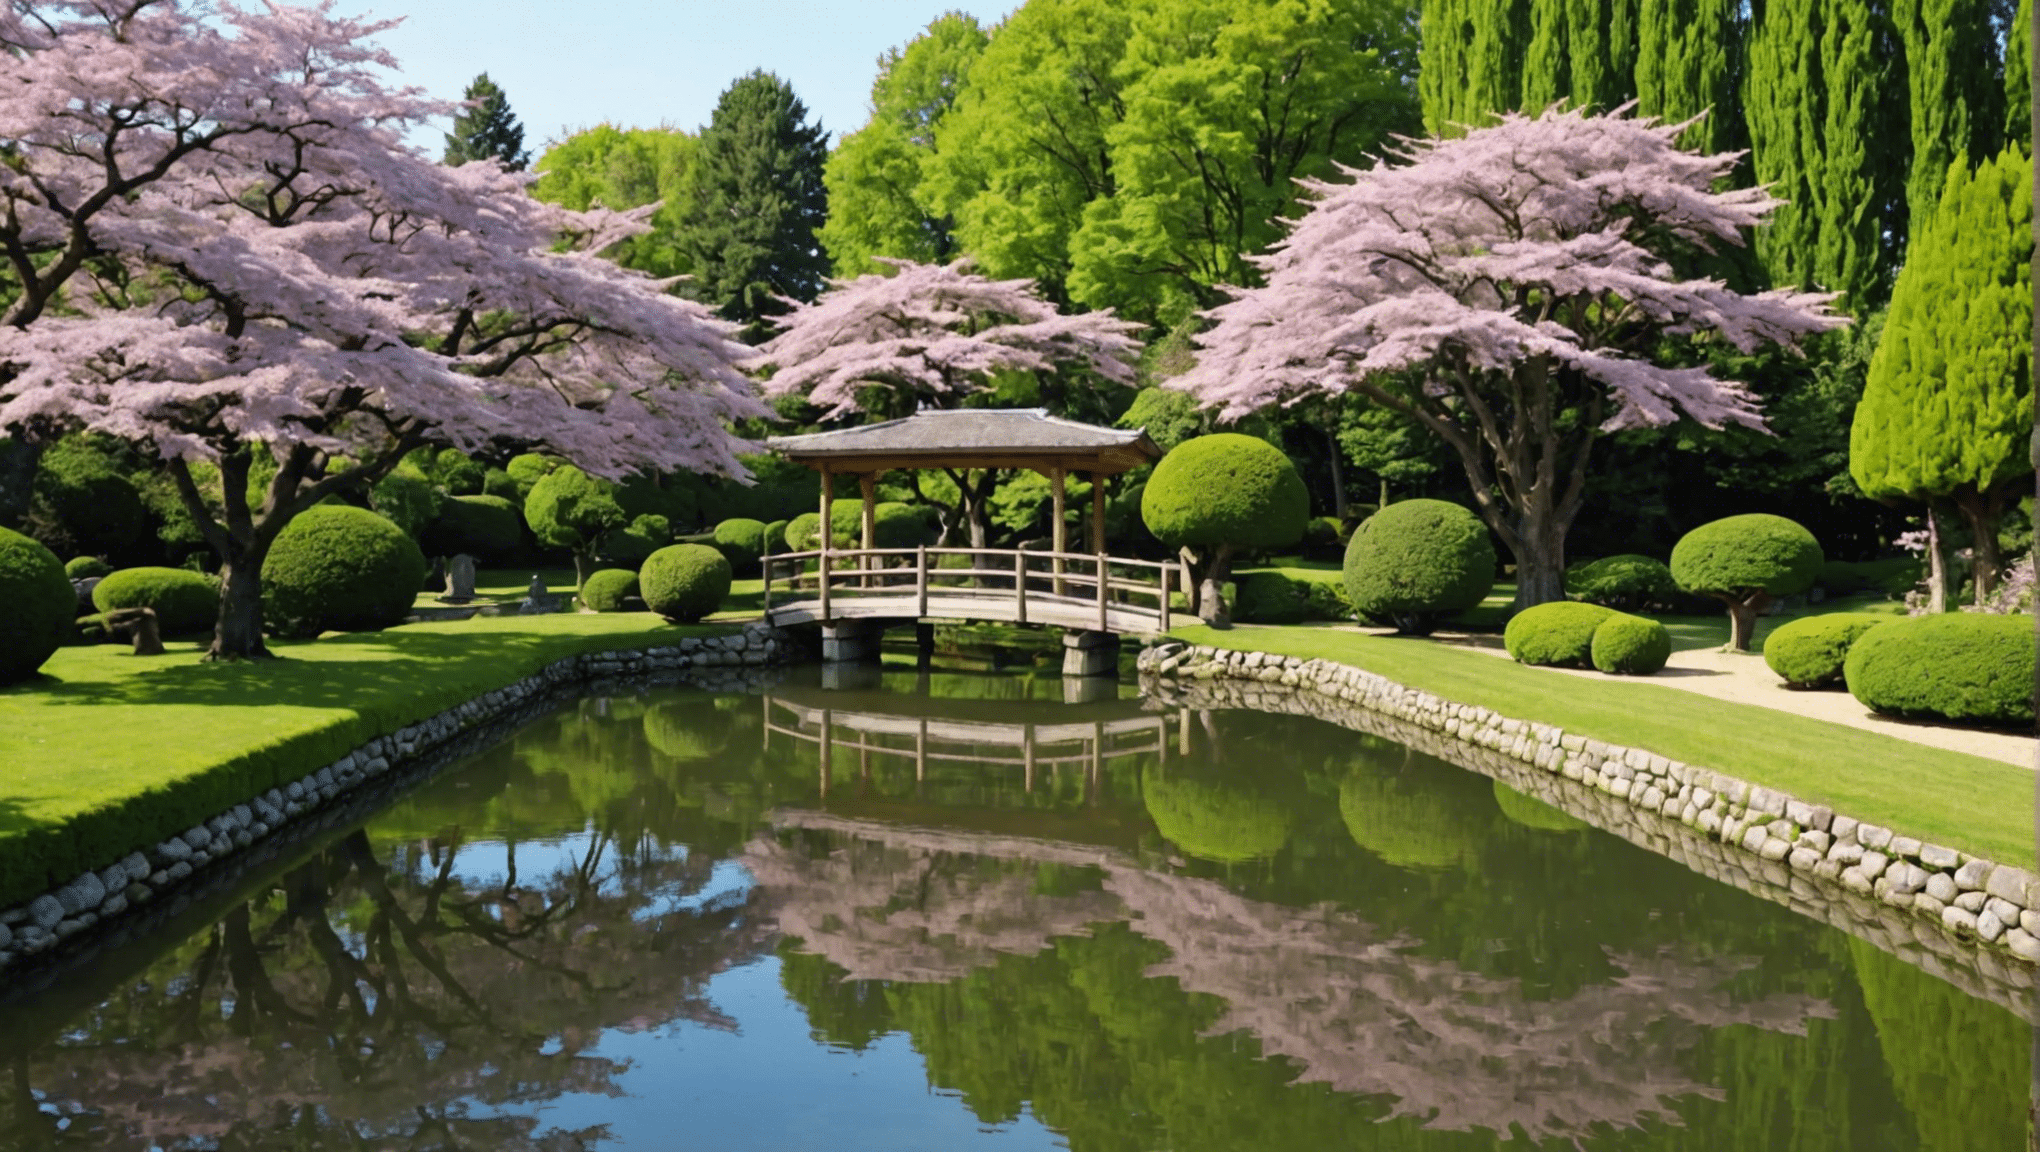 découvrez pourquoi le jardin japonais de dijon exerce une telle fascination et laissez-vous charmer par son ambiance paisible et envoûtante.